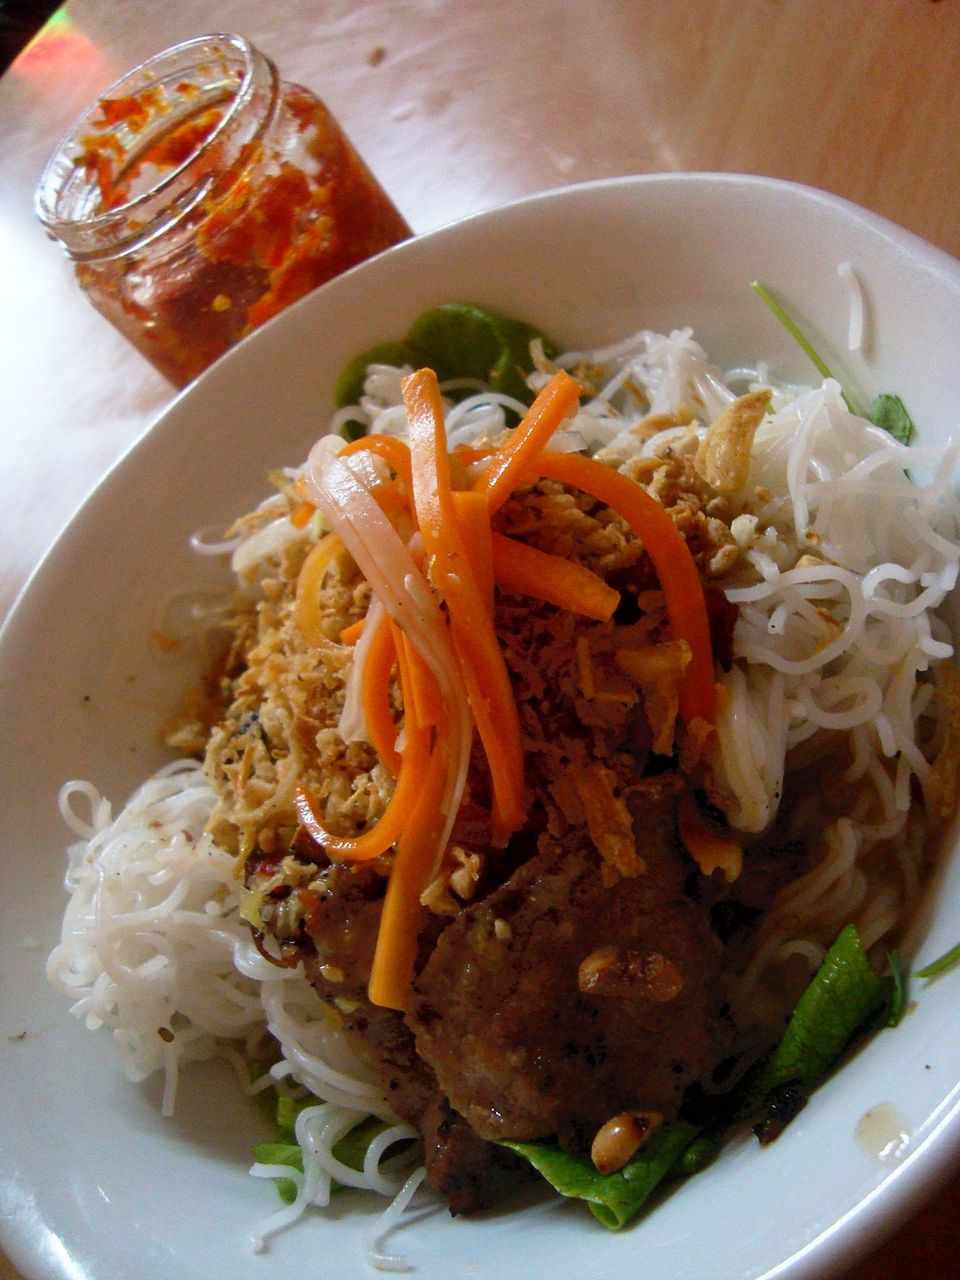 Bún thịt nướng, una deliciosa ensalada vietnamita con carne a la parrilla